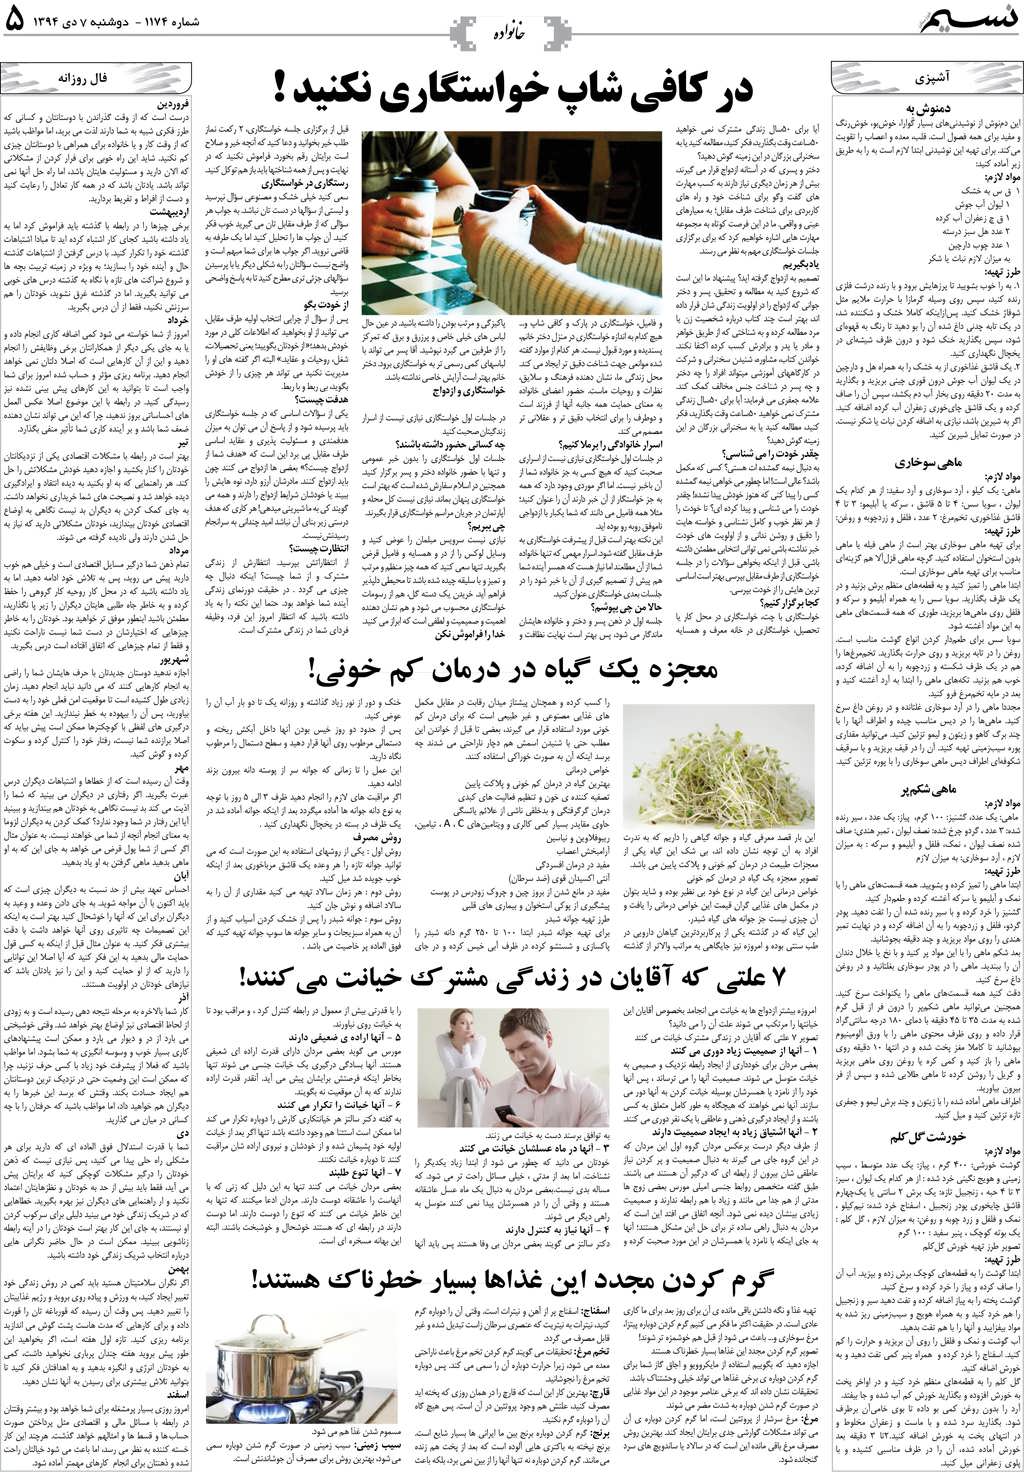 صفحه خانواده روزنامه نسیم شماره 1174